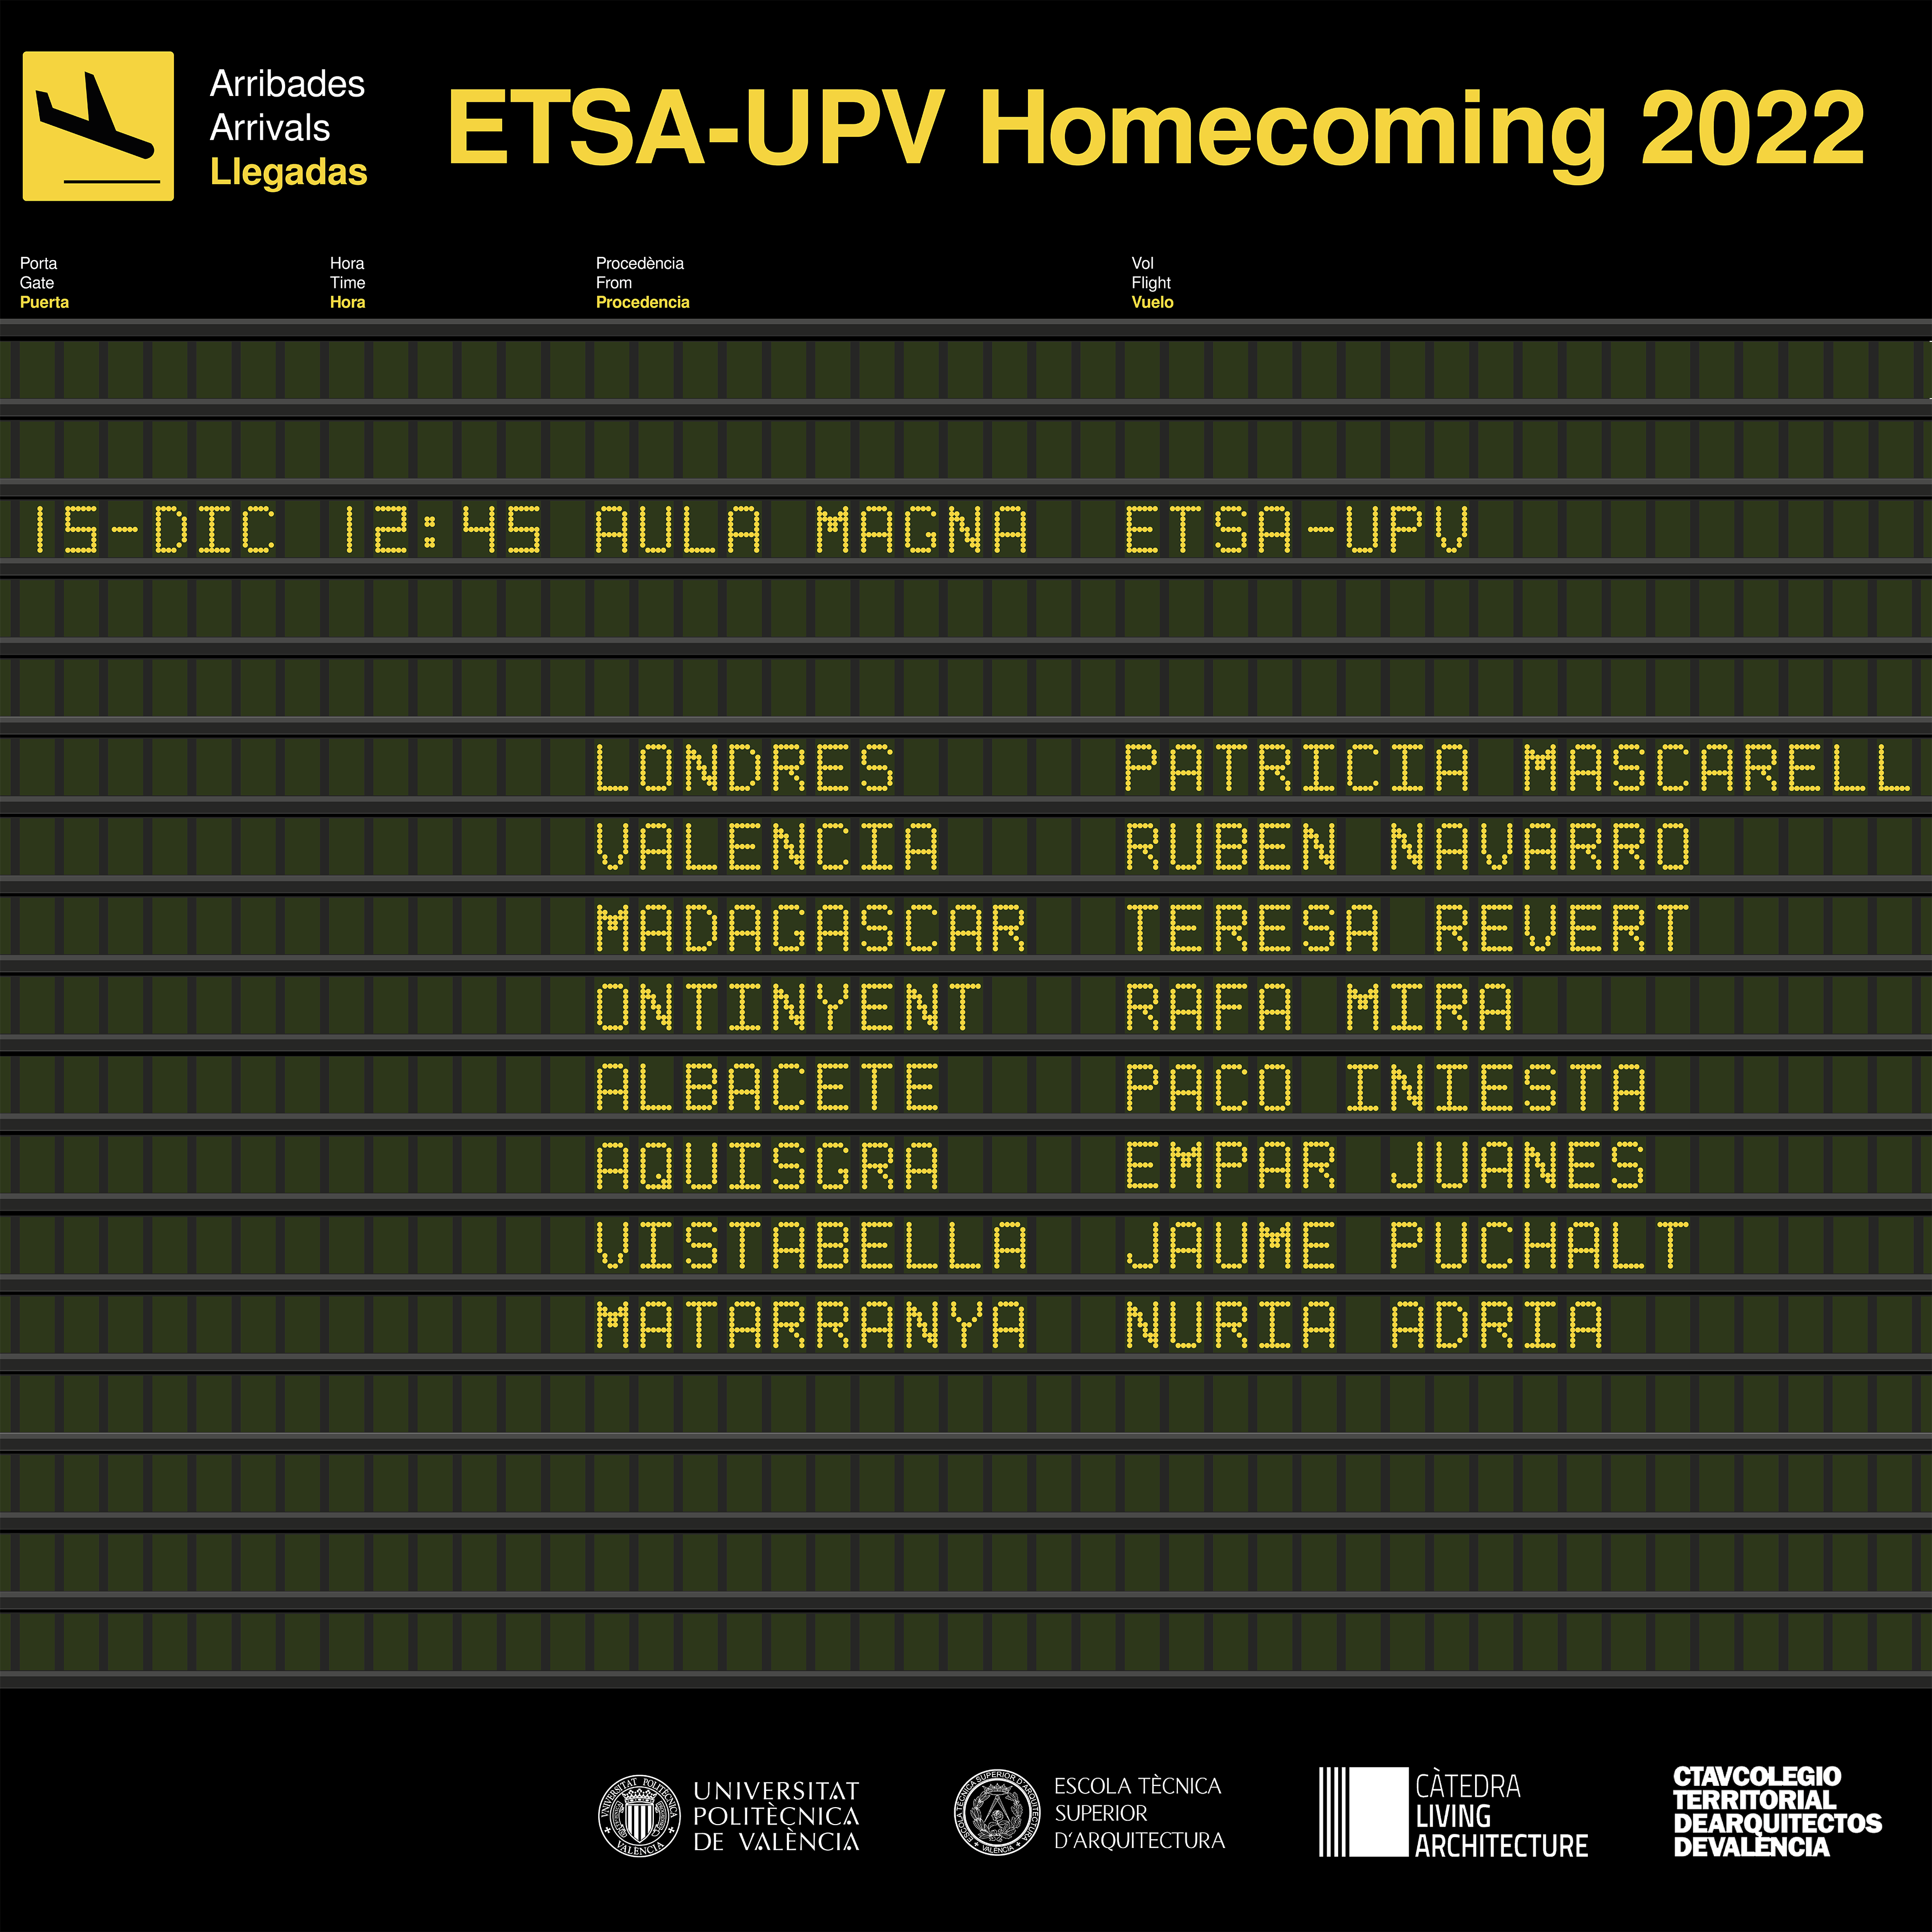 ETSA-UPV Homecoming 2022